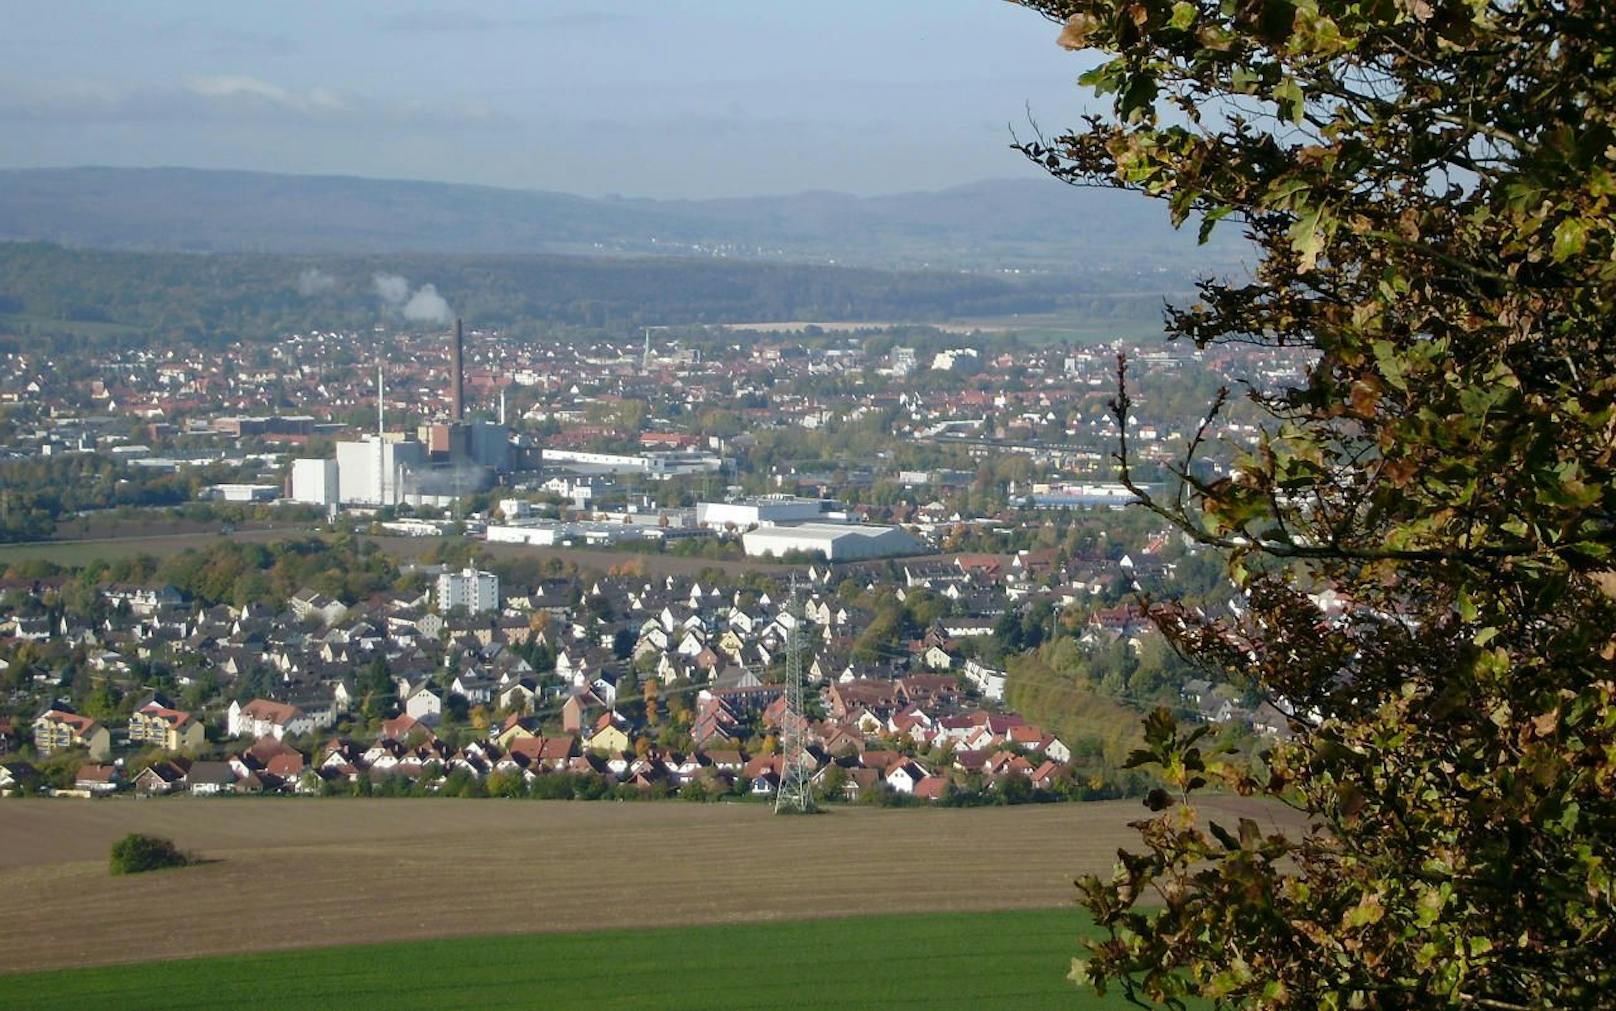 Afferde (vorne) vom Berg Hohe Stolle gesehen. Im Hintergrund ist das Heizkraftwerk und die Stadt Hameln zu sehen.